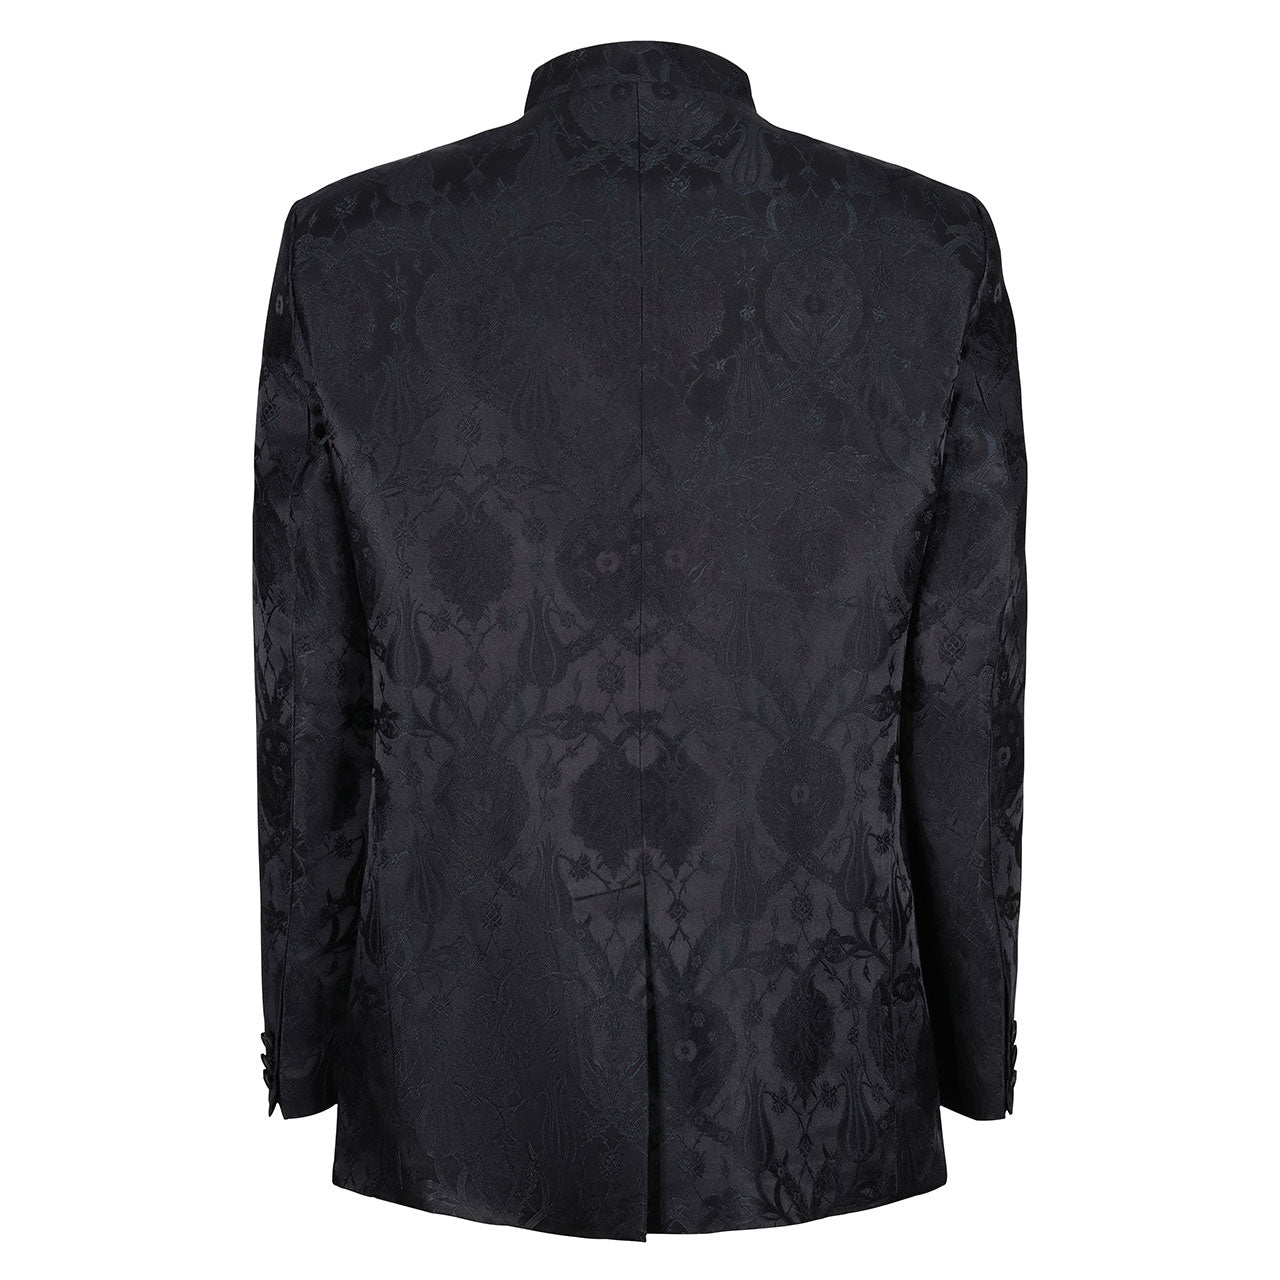 Glyndebourne Black Jacket by Ottoman Silks Glyndebourne Shop